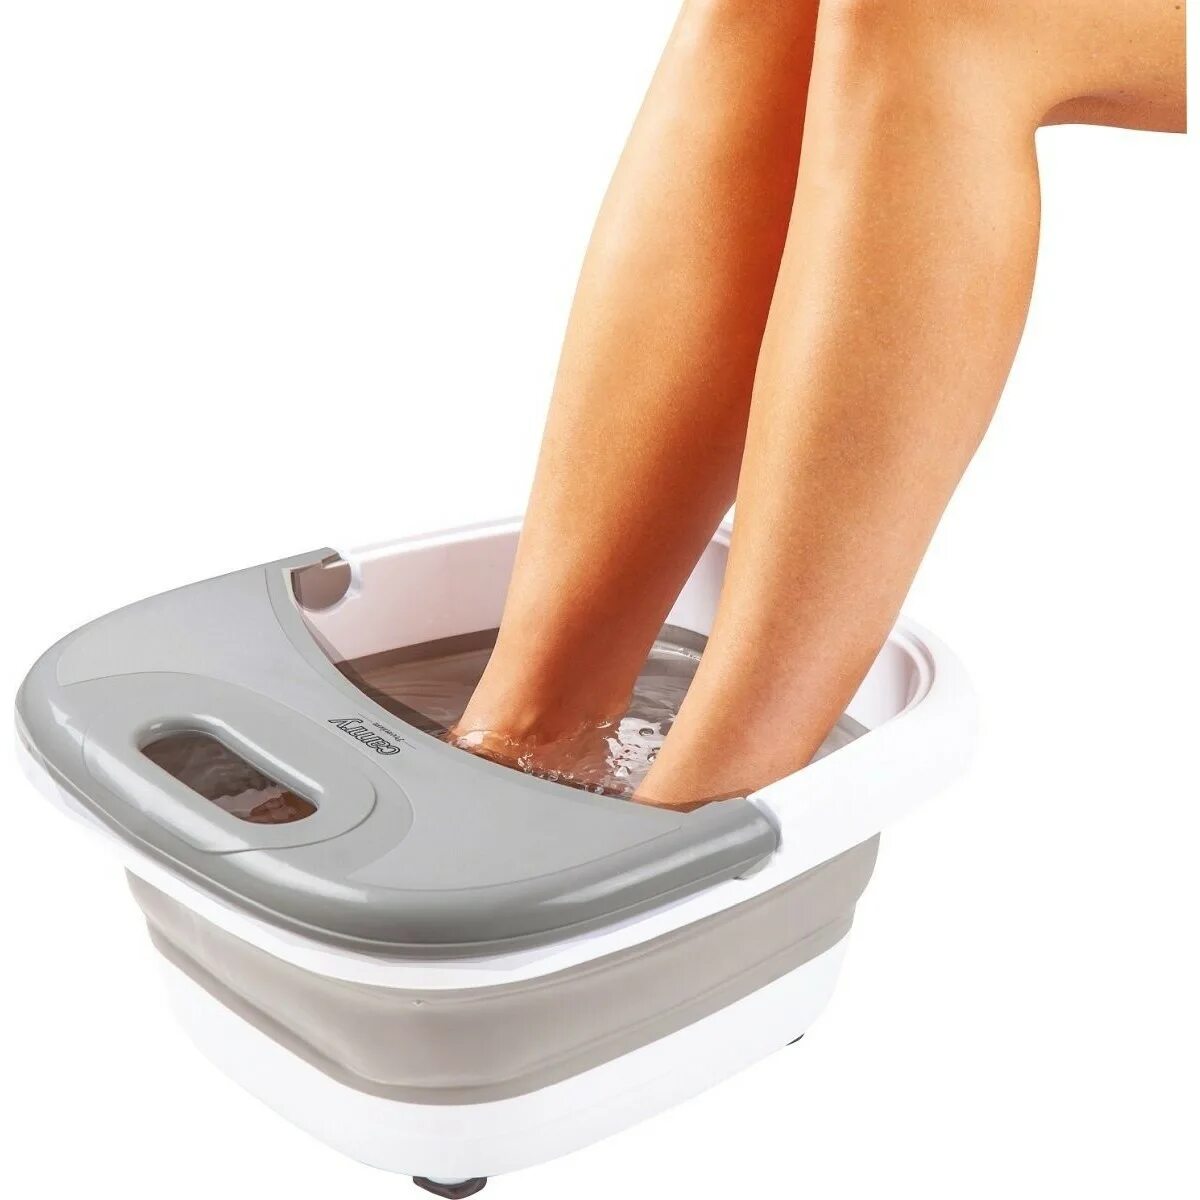 Электрическая ванночка для ног. Ванночка для ног ECON Eco-fs102. Гидромассажер для ног Xiaomi. Ванночка массажер для ног. Ванночка для ног электрическая с массажем.